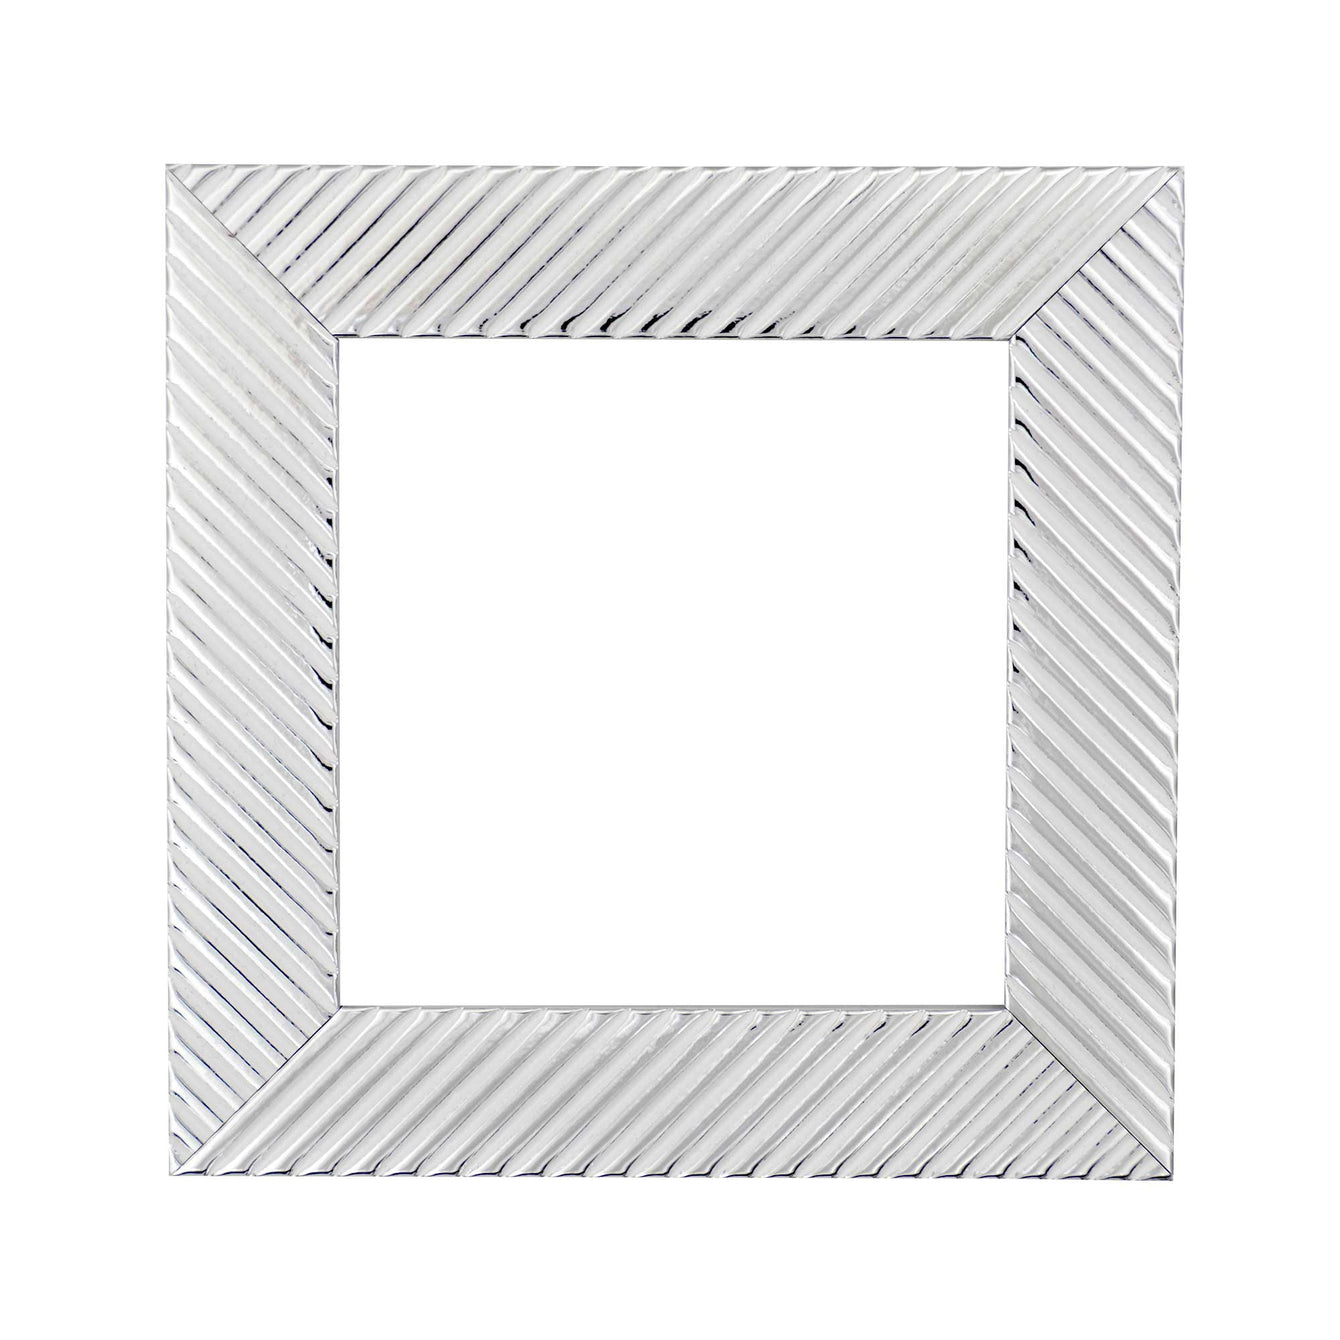 ElekTek Decorative Switch Surround Frame Cover Finger Plate Patterns Silver Black Diagonals